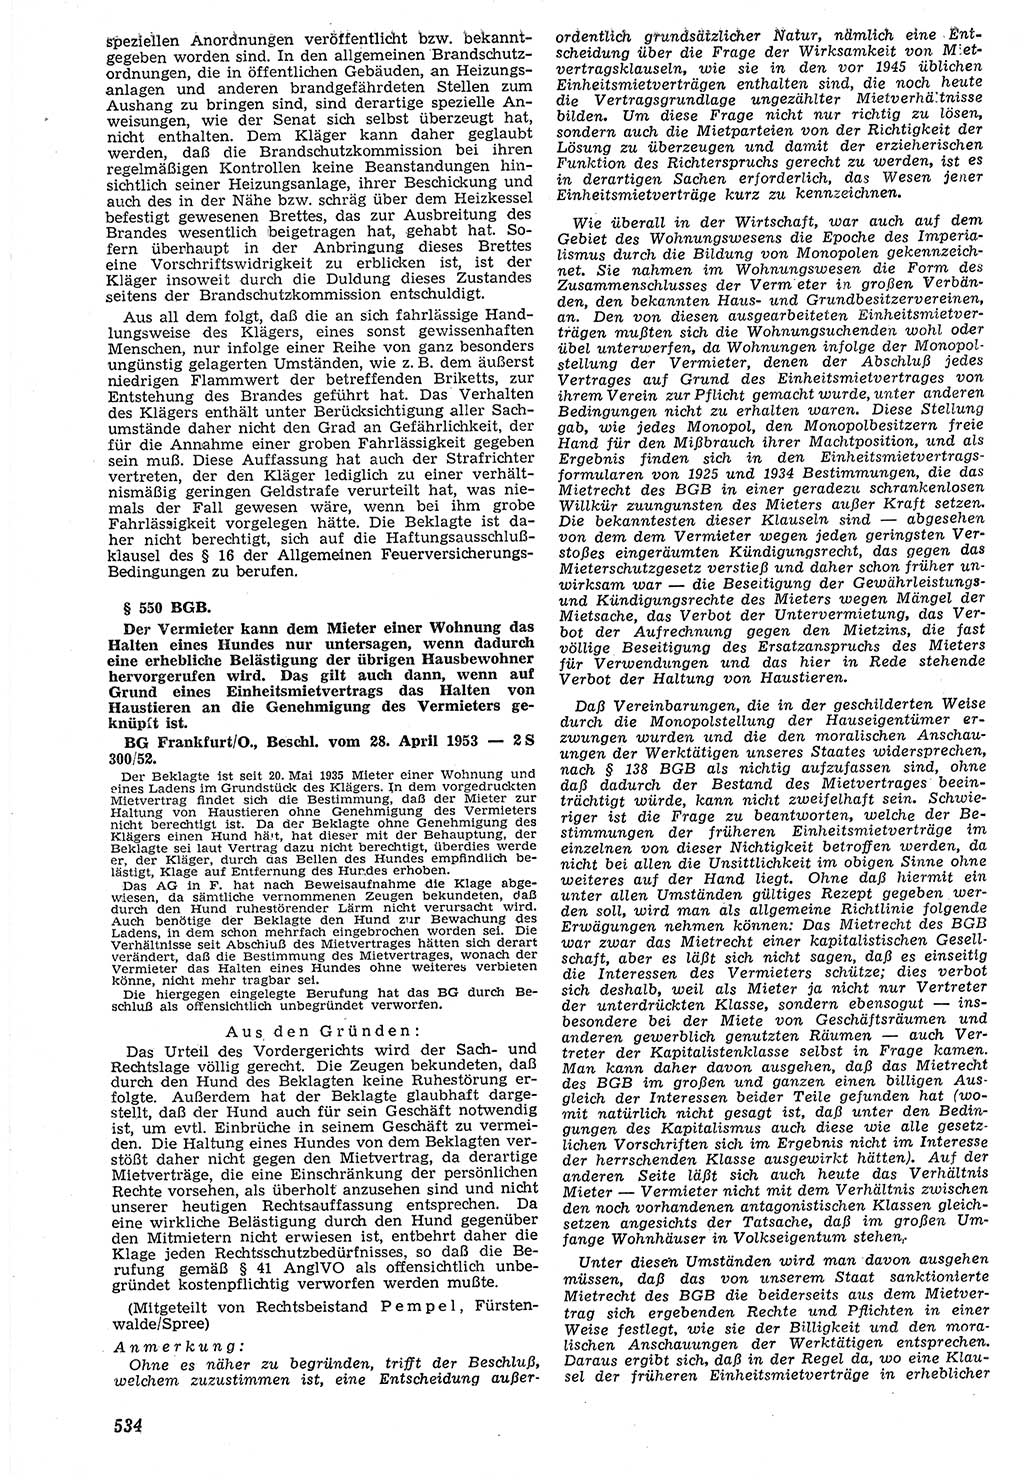 Neue Justiz (NJ), Zeitschrift für Recht und Rechtswissenschaft [Deutsche Demokratische Republik (DDR)], 7. Jahrgang 1953, Seite 534 (NJ DDR 1953, S. 534)